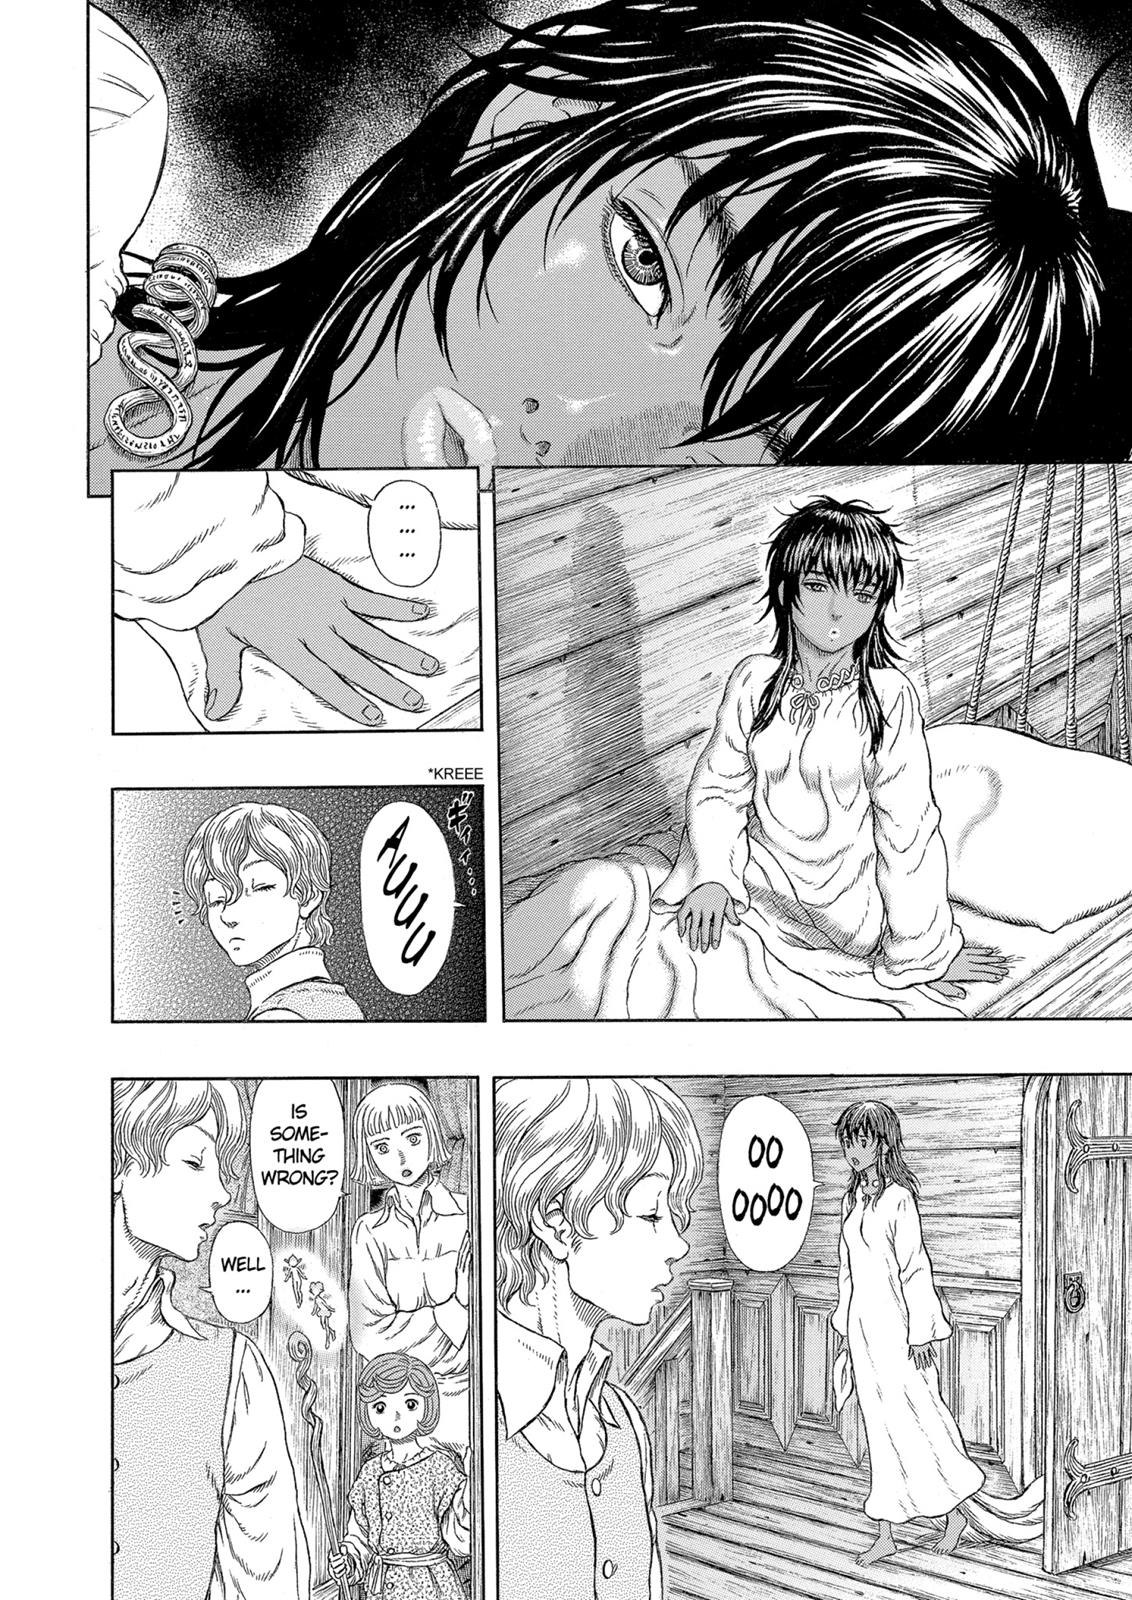 Berserk Manga Chapter 328 image 08